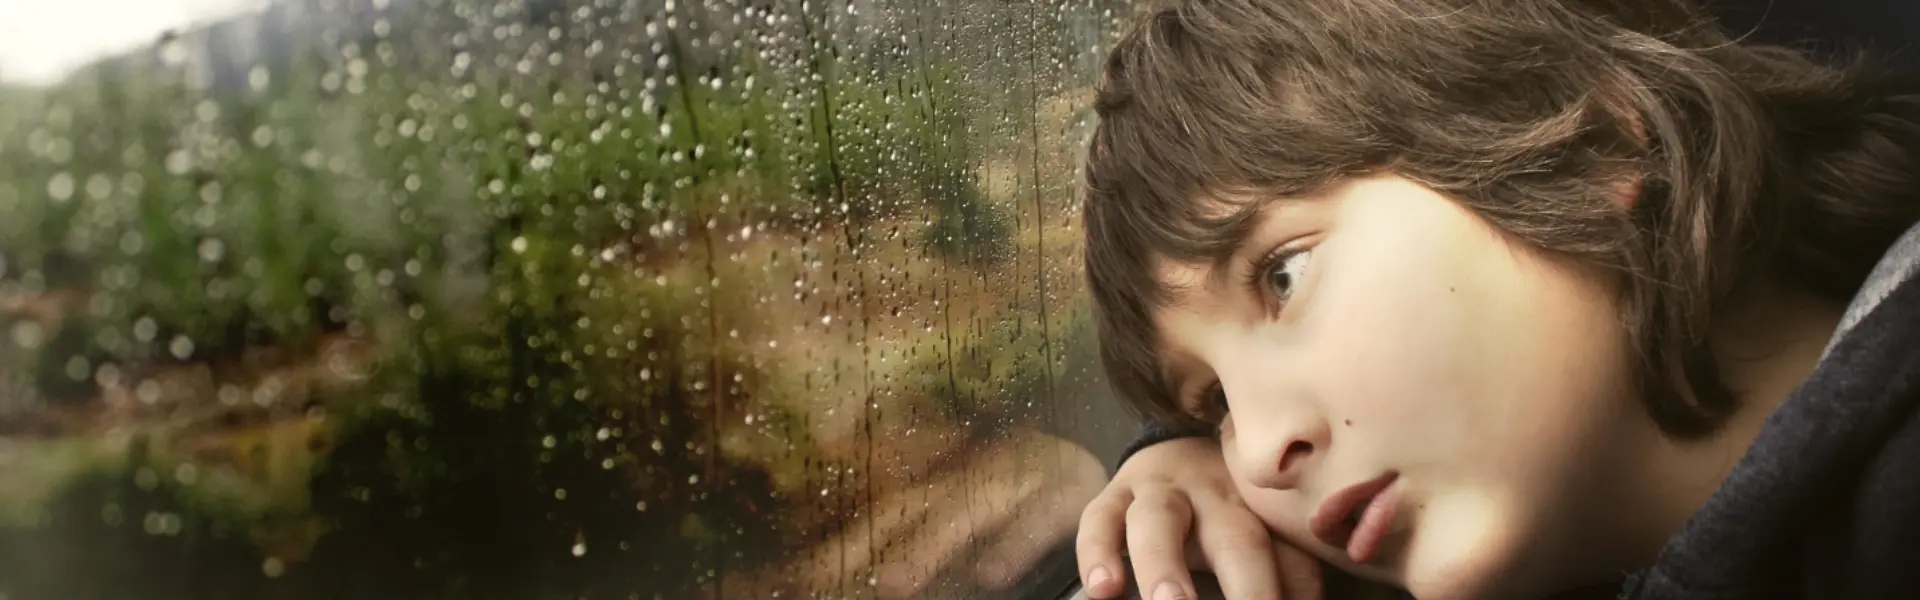 Niño pensativo mirando por una ventana con gotas de lluvia.